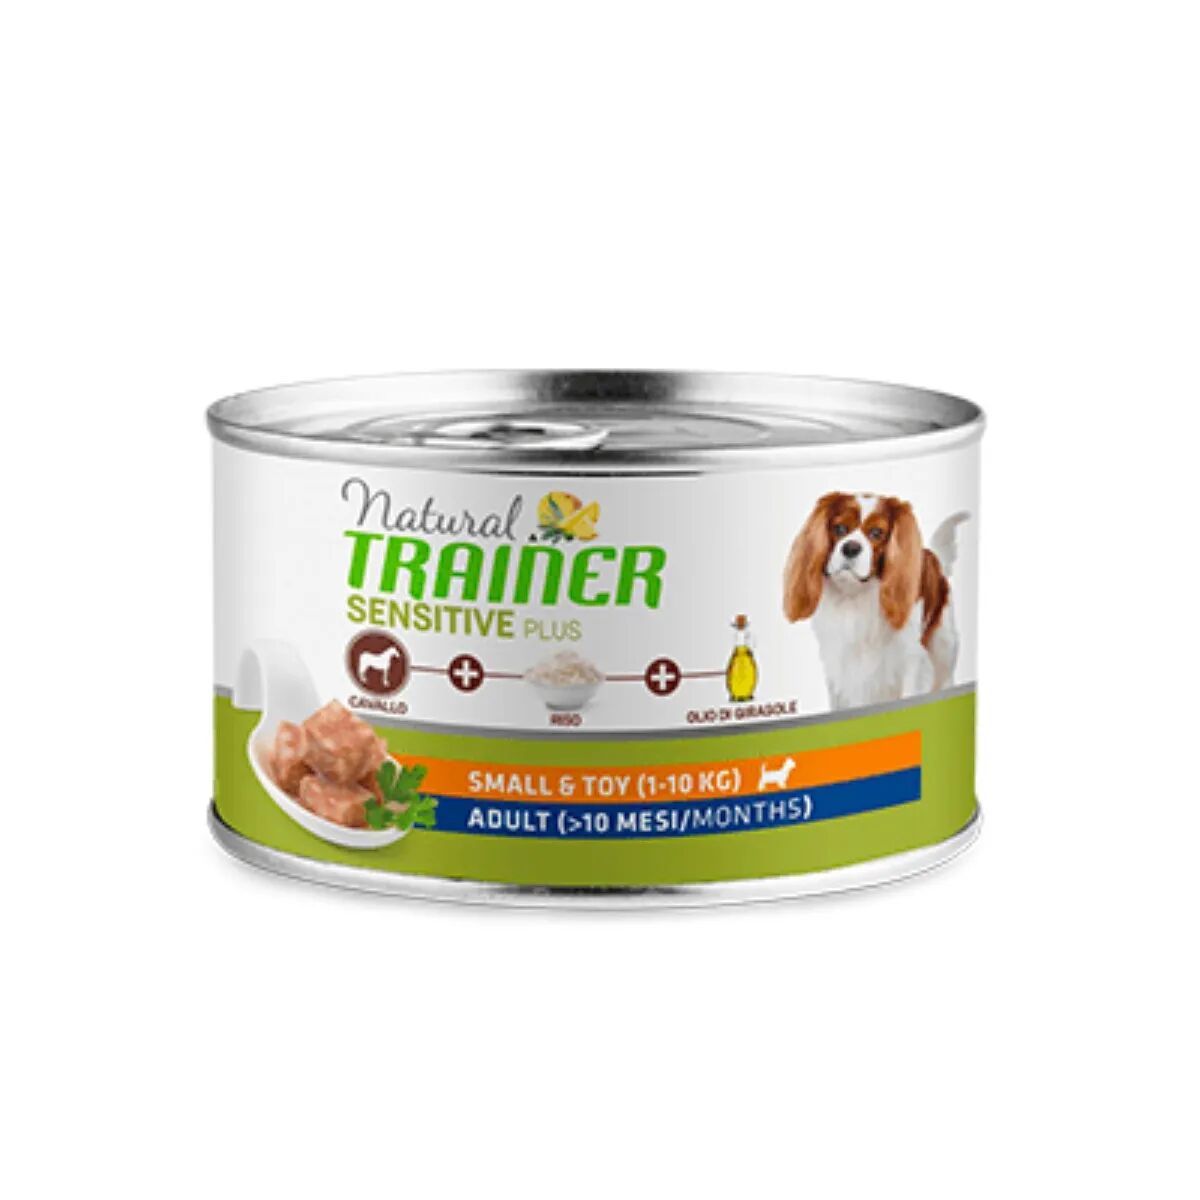 NATURAL TRAINER Sensitive Plus Dog Lattina Multipack 24x150G CAVALLO